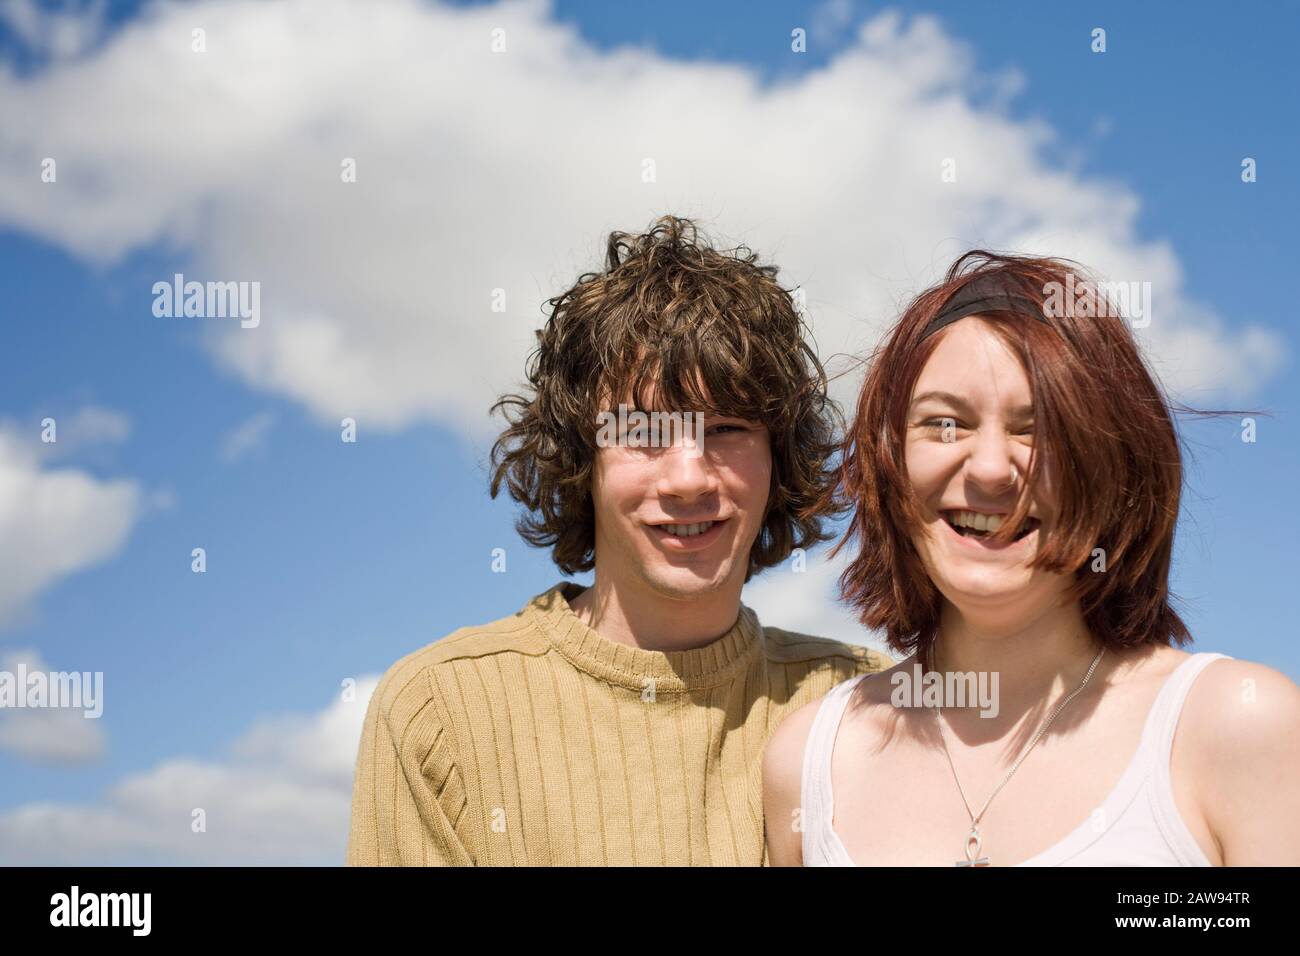 Un couple d'adolescents riant et souriant à l'extérieur de l'appareil photo Banque D'Images